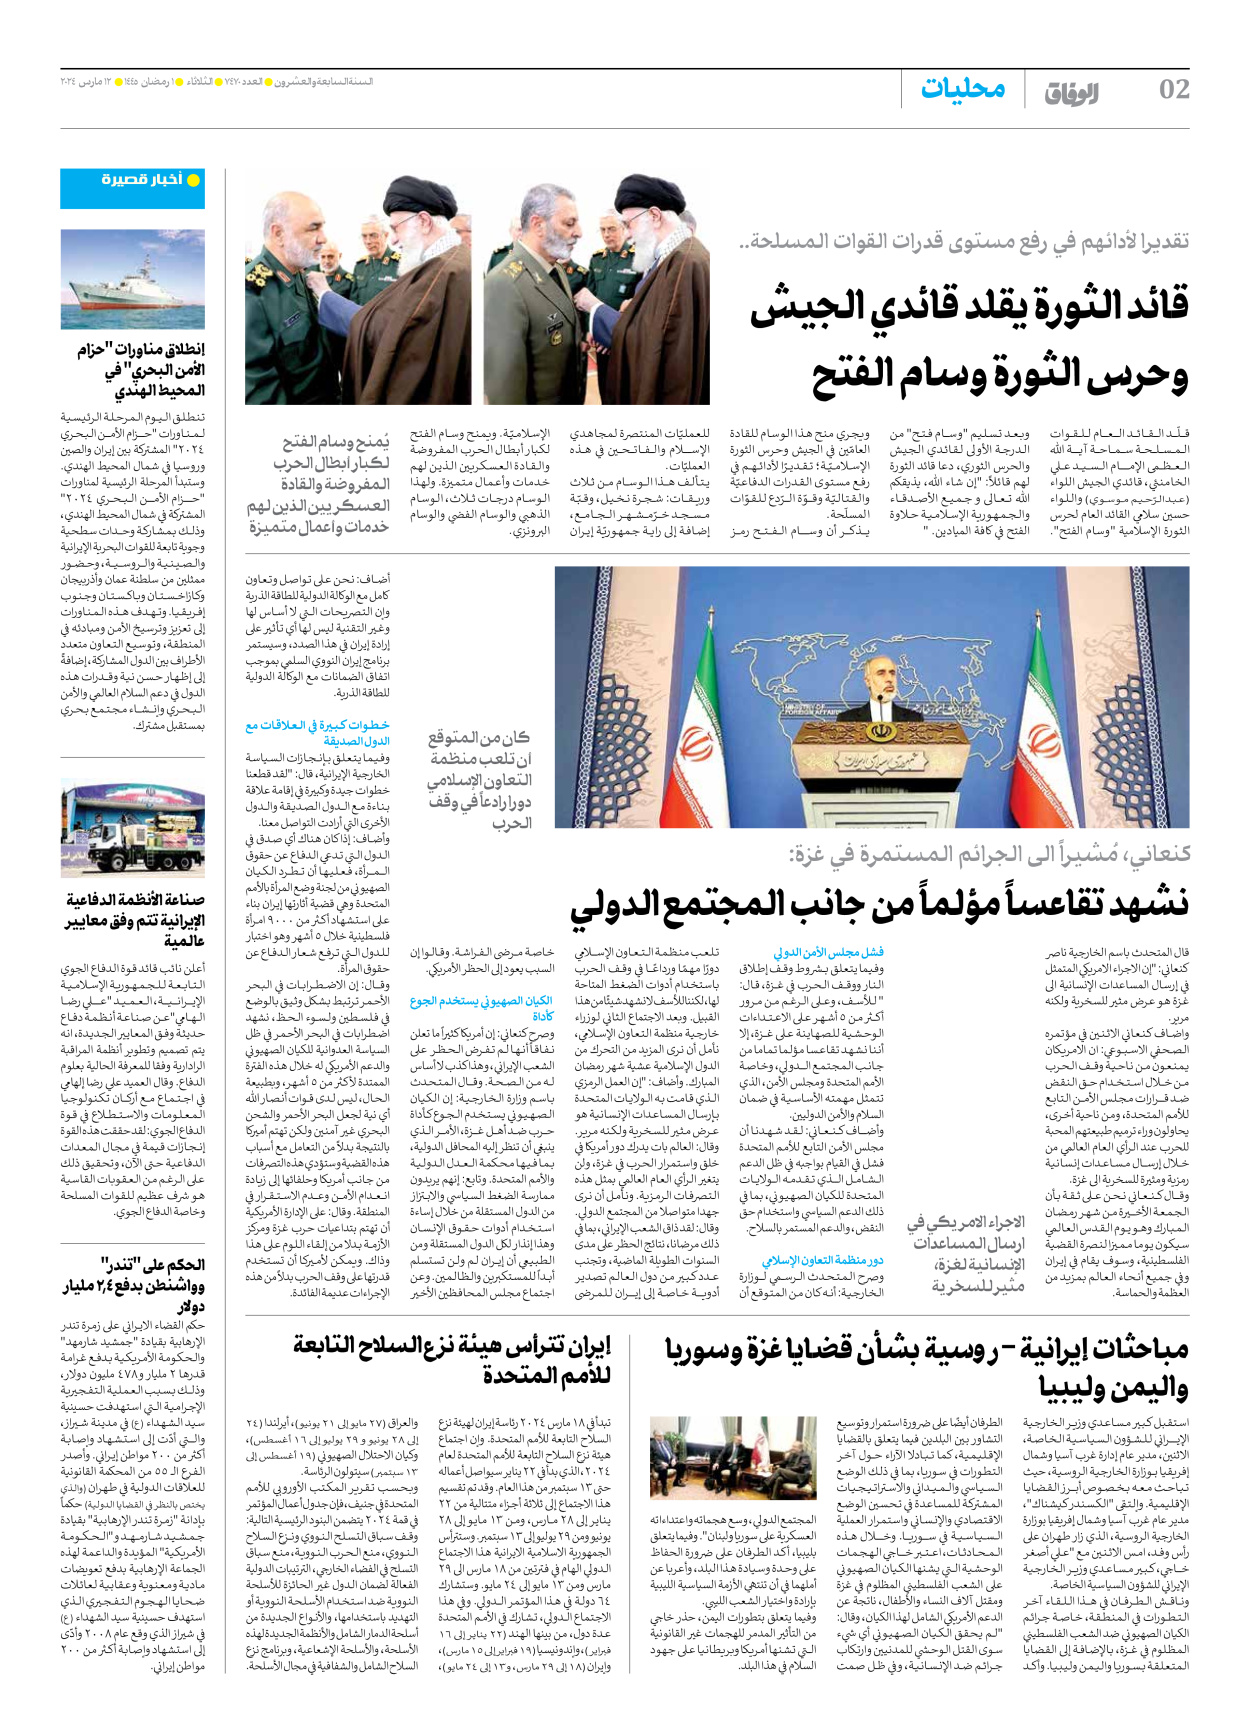 صحیفة ایران الدولیة الوفاق - العدد سبعة آلاف وأربعمائة وسبعون - ١٢ مارس ٢٠٢٤ - الصفحة ۲